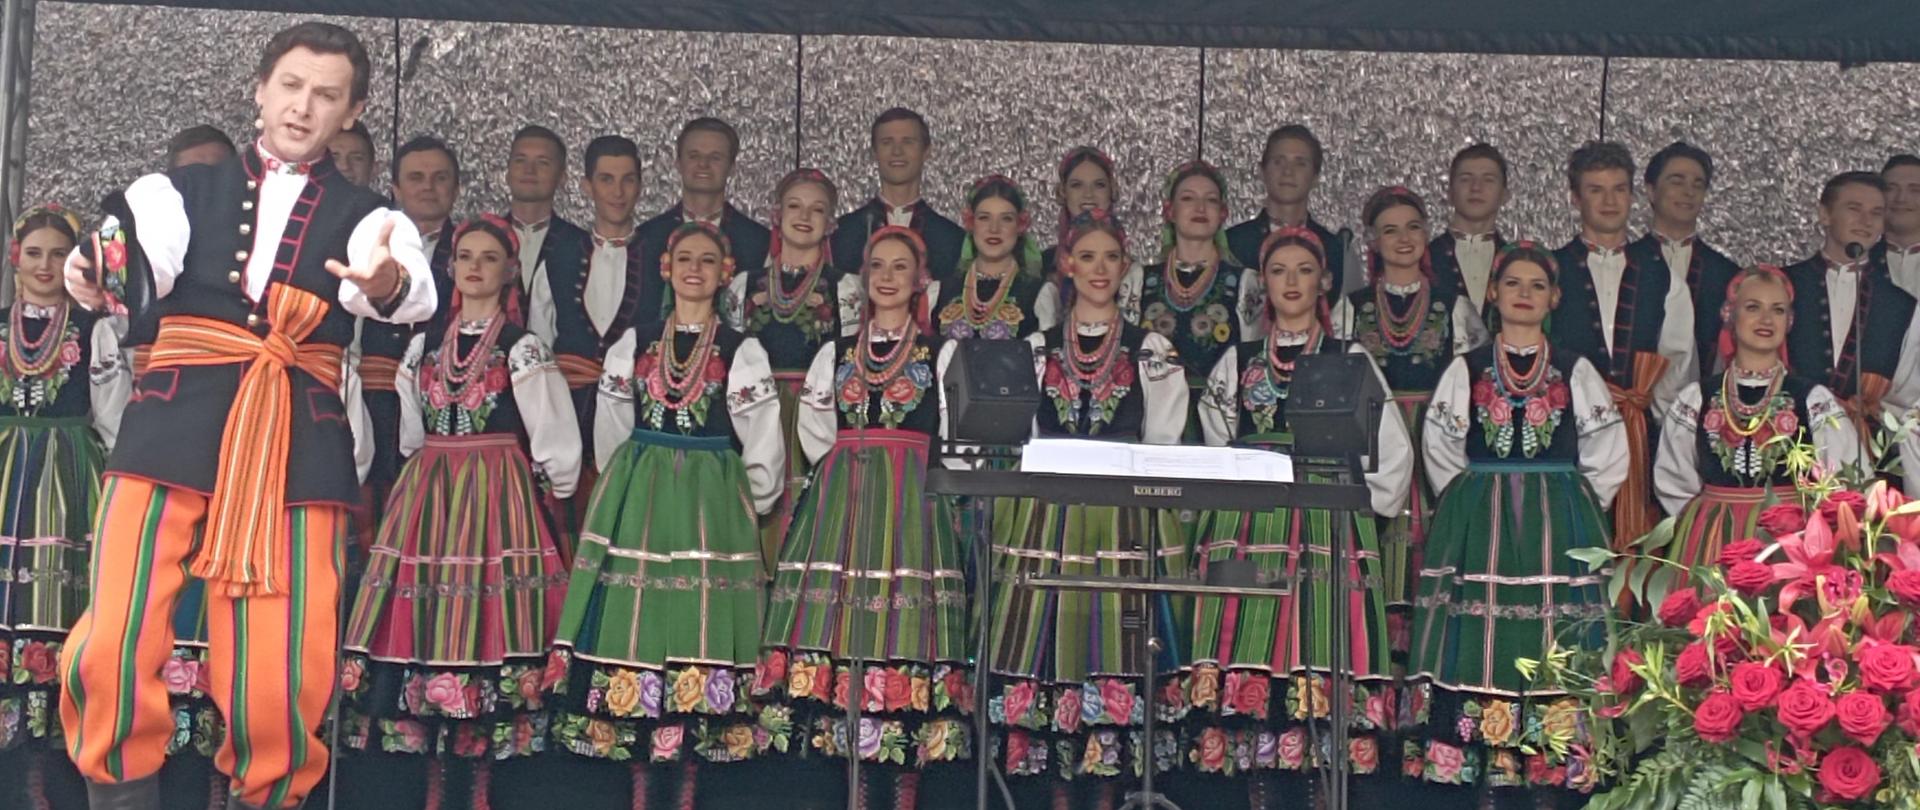 Na scenie stoi grupa mężczyzn i kobiet ubranych w kolorowe stroje ludowe - Państwowy Zespół Ludowy Pieśni i Tańca „Mazowsze”
